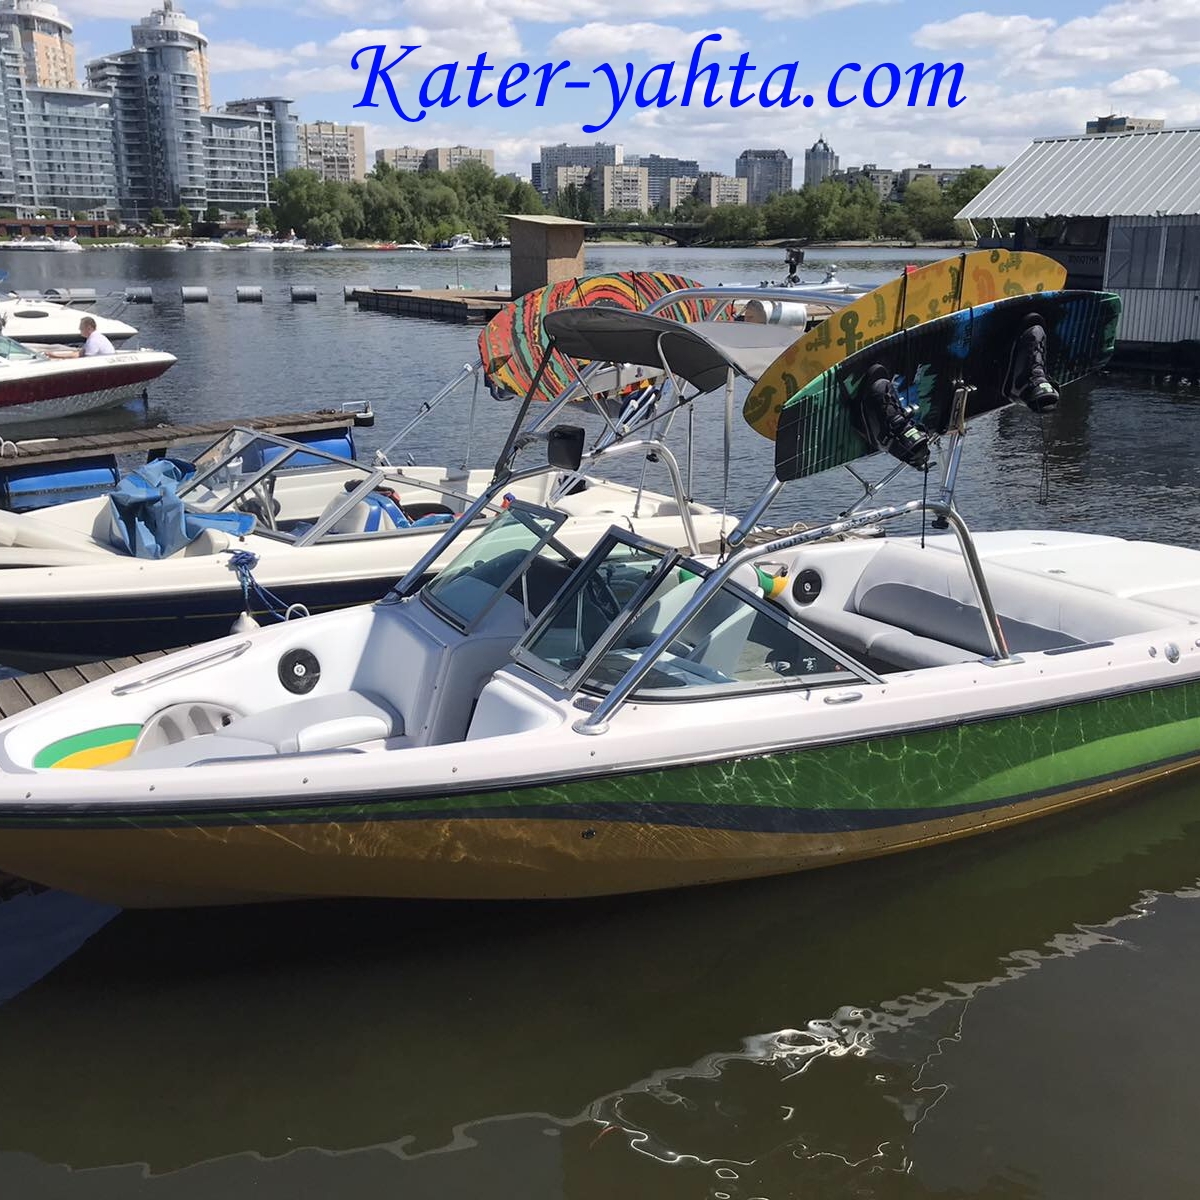 Фото арендуемой яхты Nautique-210 на сайте kater-yahta.com.ua